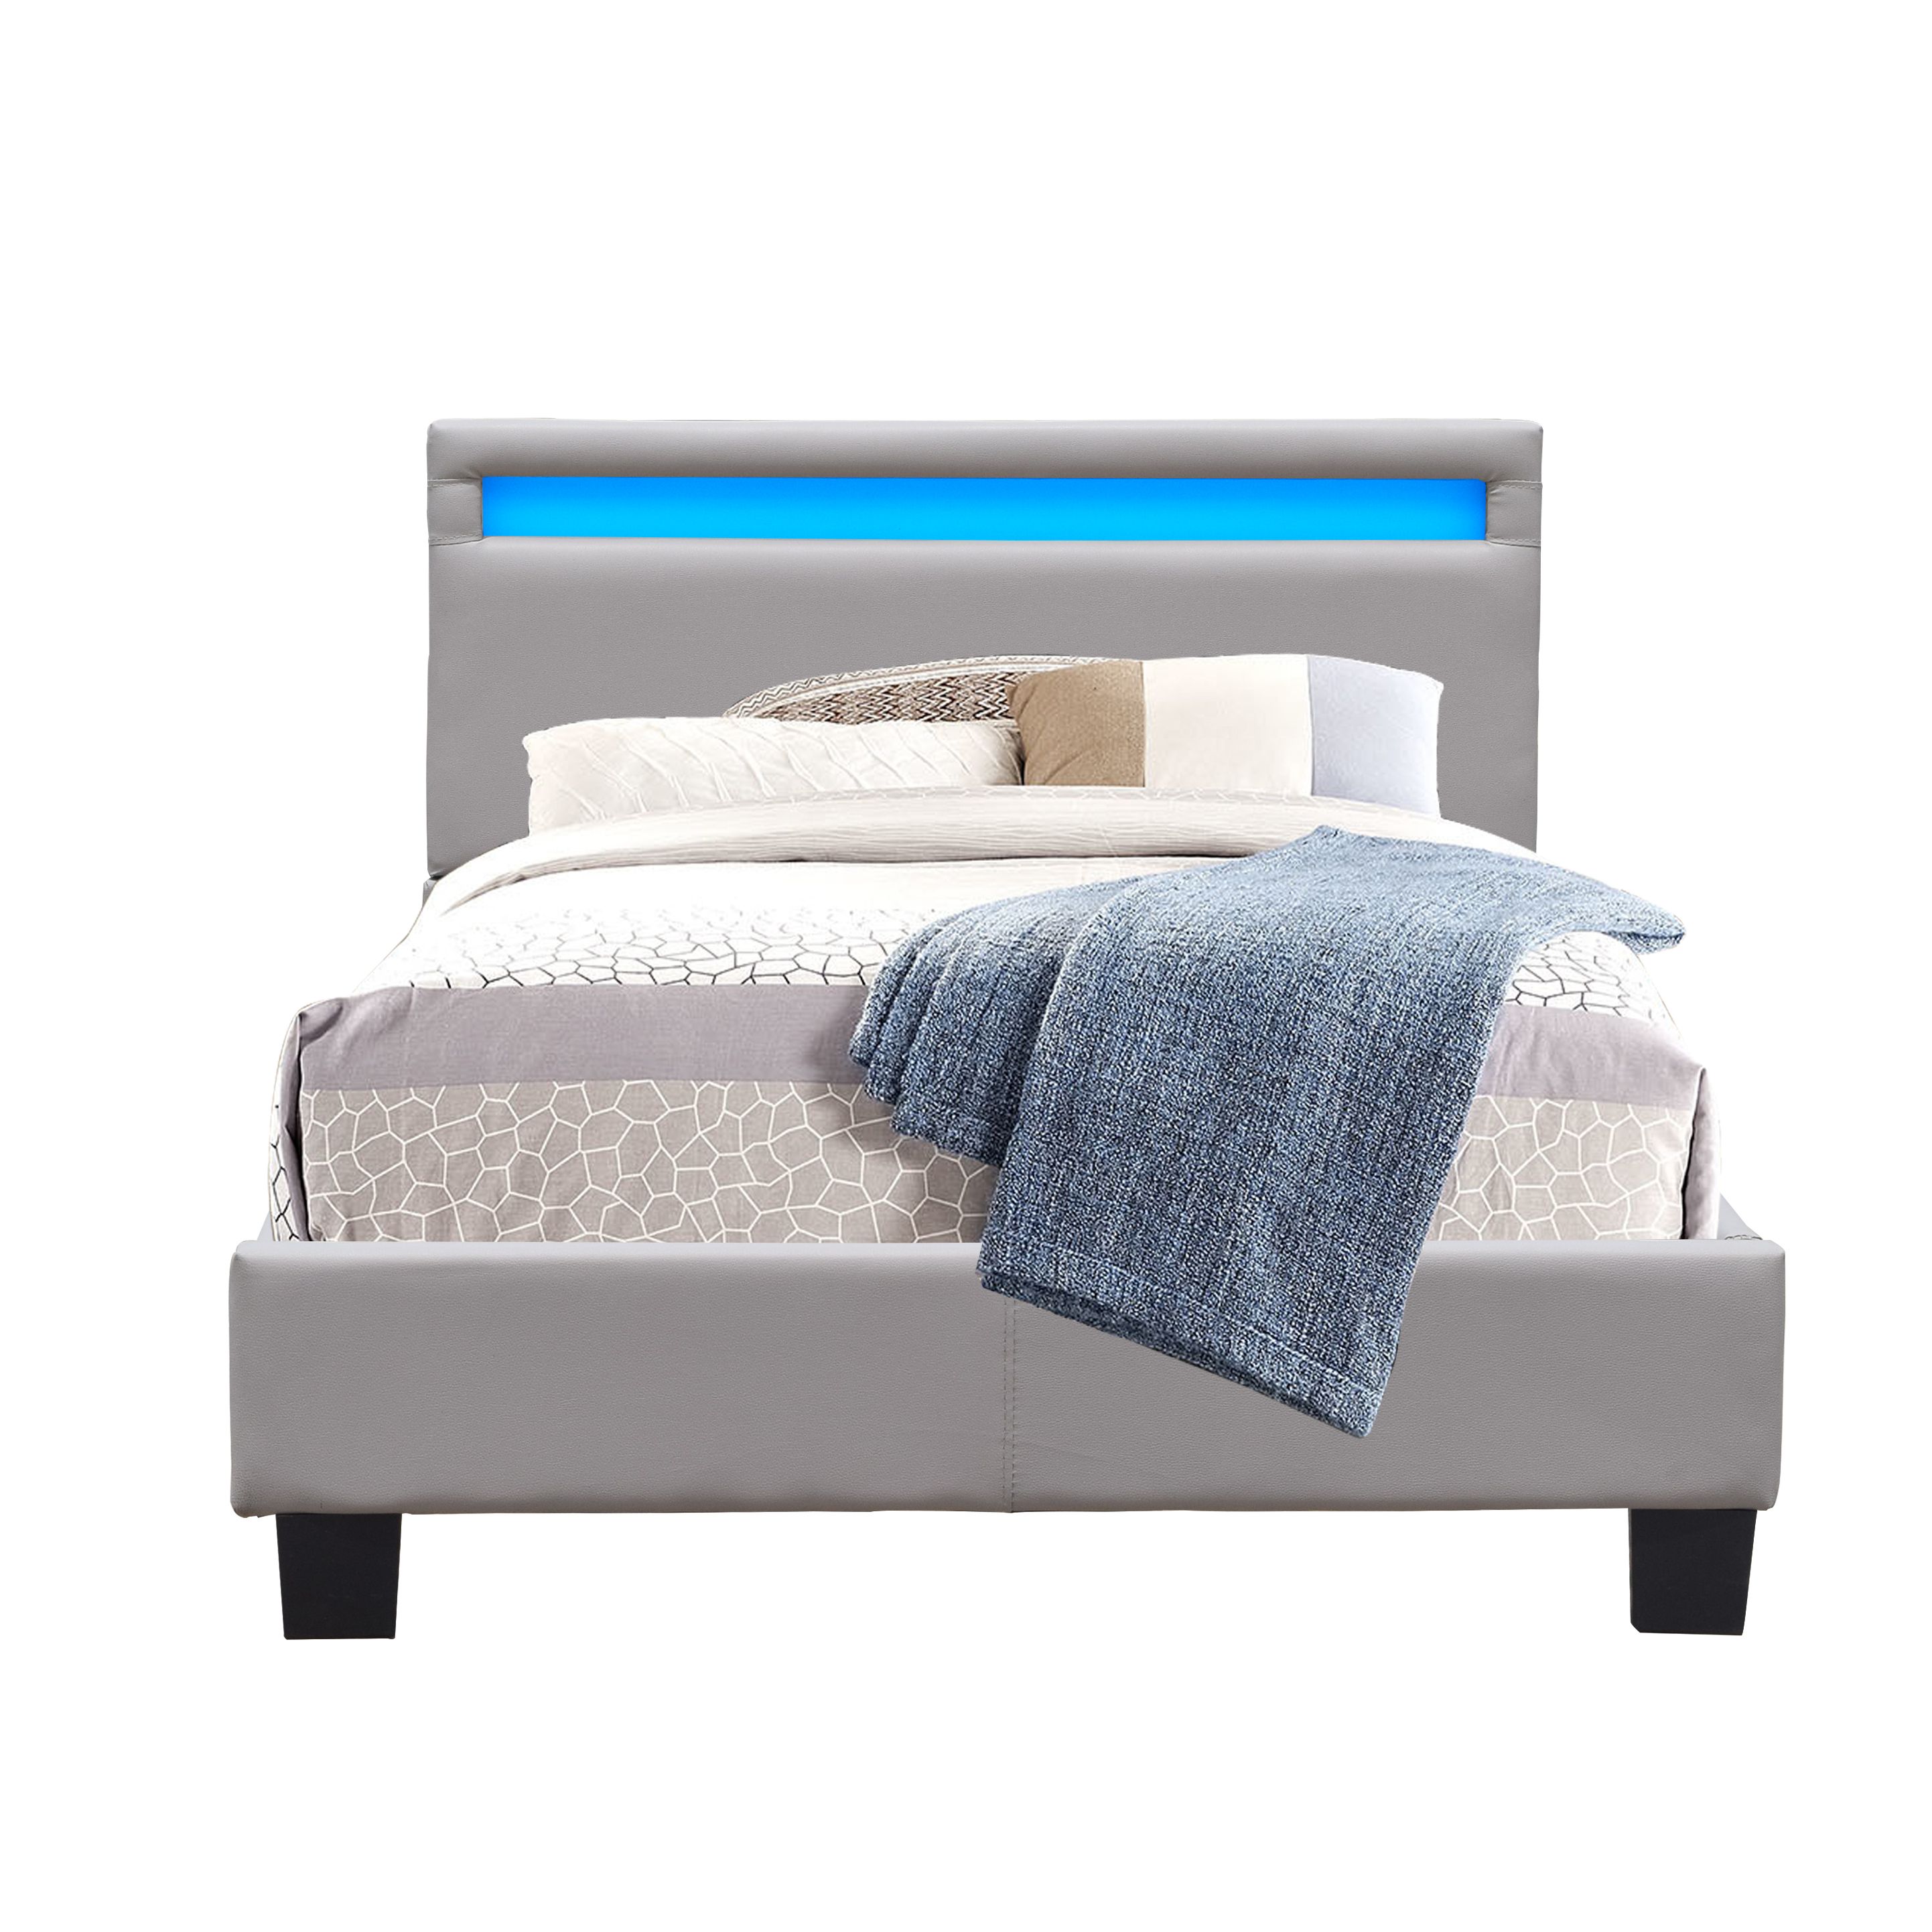 lit simple en bois - literie julien - solide et confortable - 90x200 cm - couleur gris